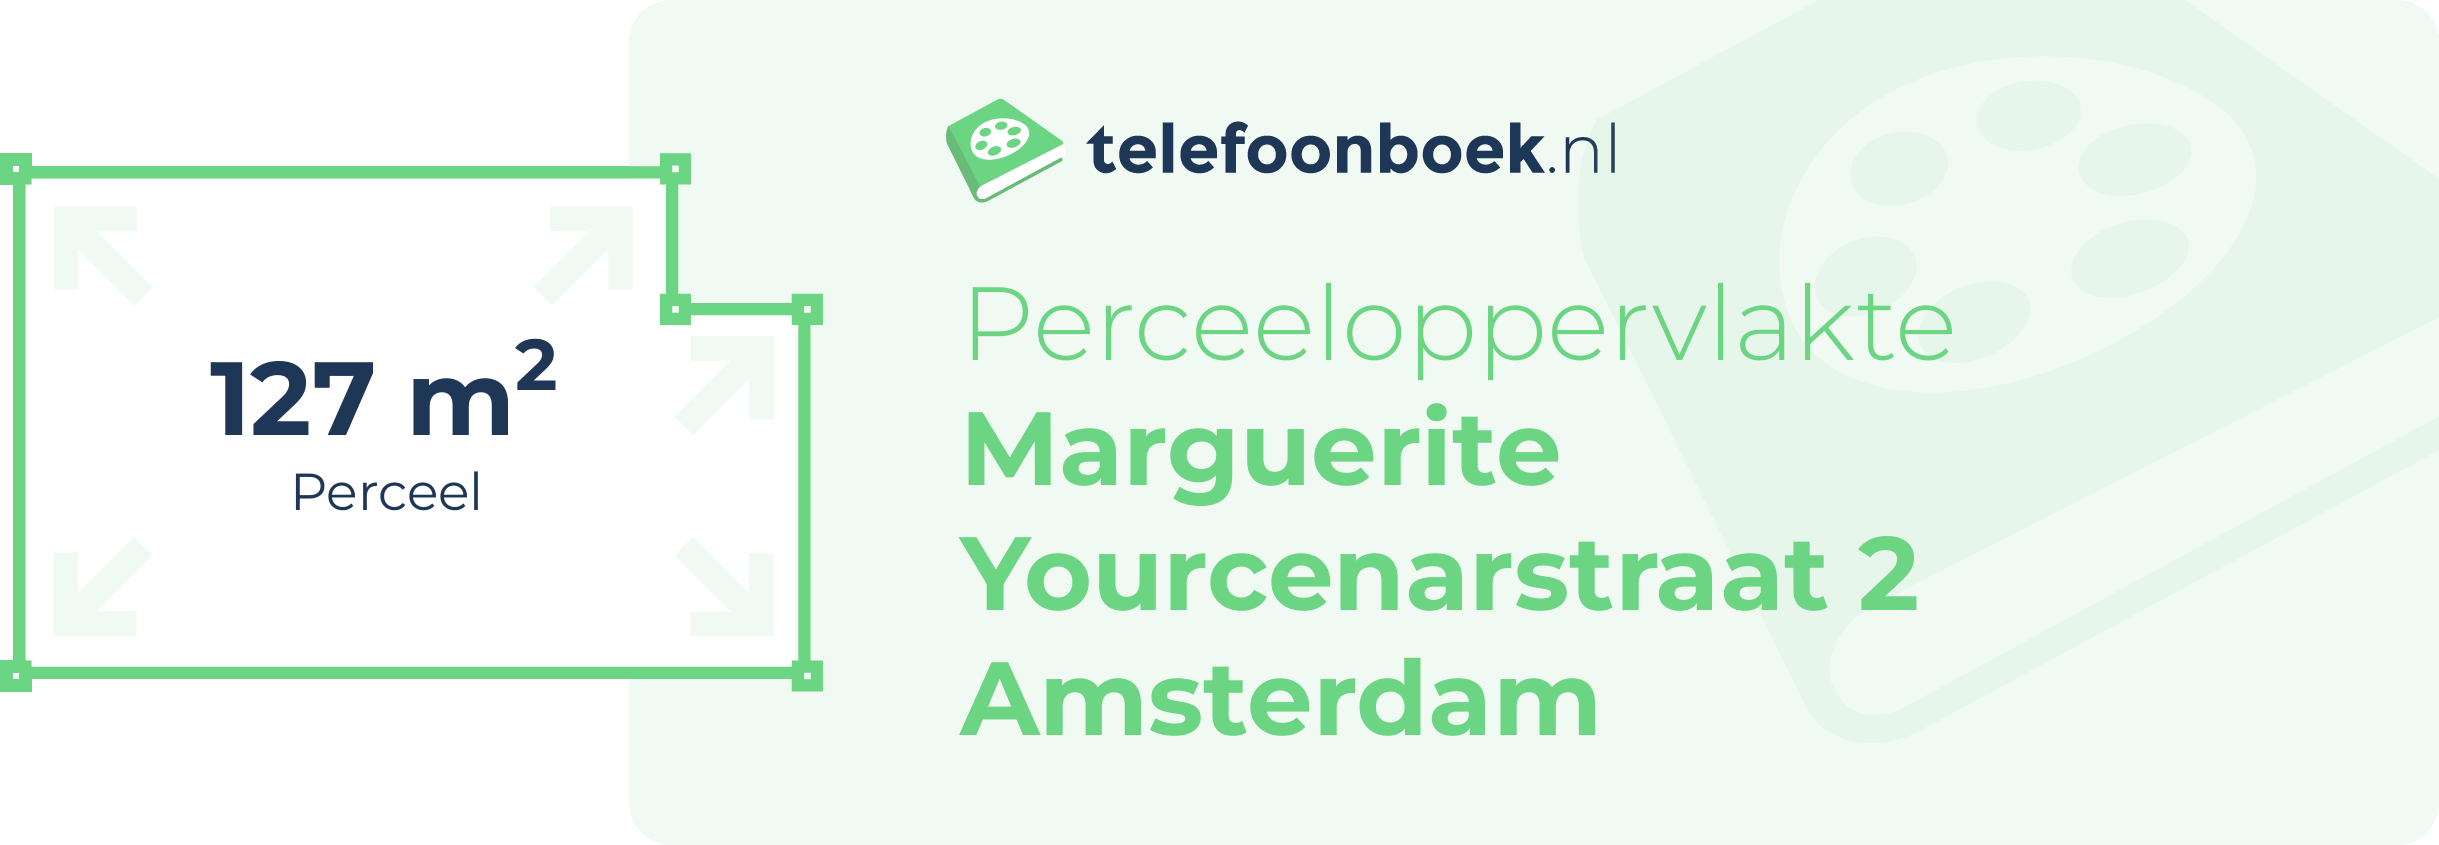 Perceeloppervlakte Marguerite Yourcenarstraat 2 Amsterdam